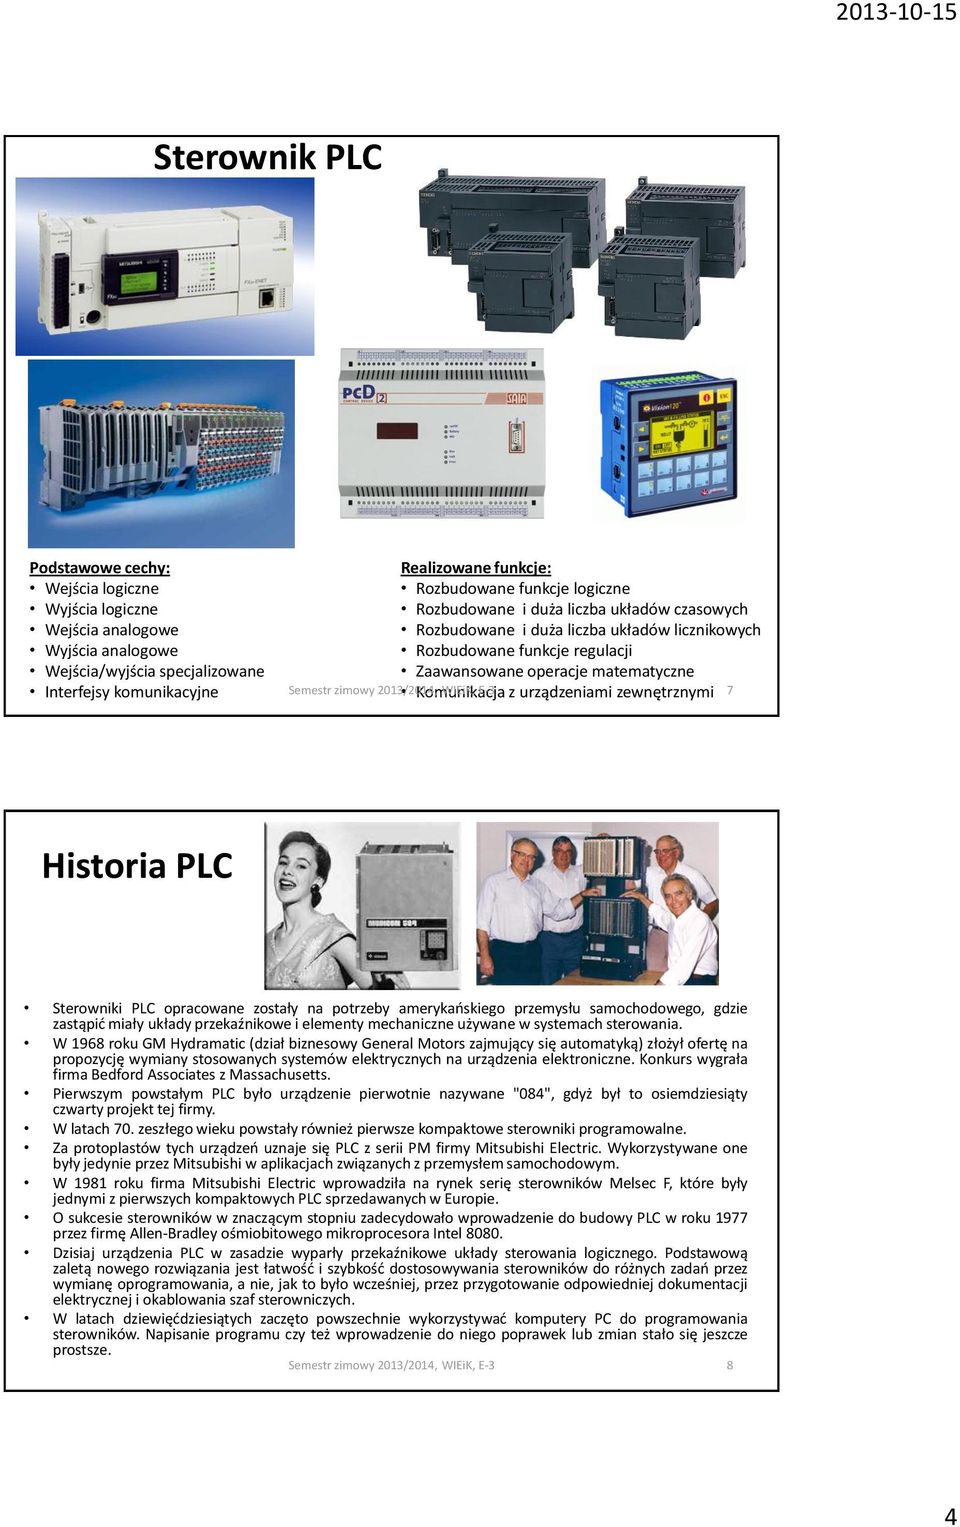 zewnętrznymi 7 Historia PLC Sterowniki PLC opracowane zostały na potrzeby amerykańskiego przemysłu samochodowego, gdzie zastąpić miały układy przekaźnikowe i elementy mechaniczne używane w systemach